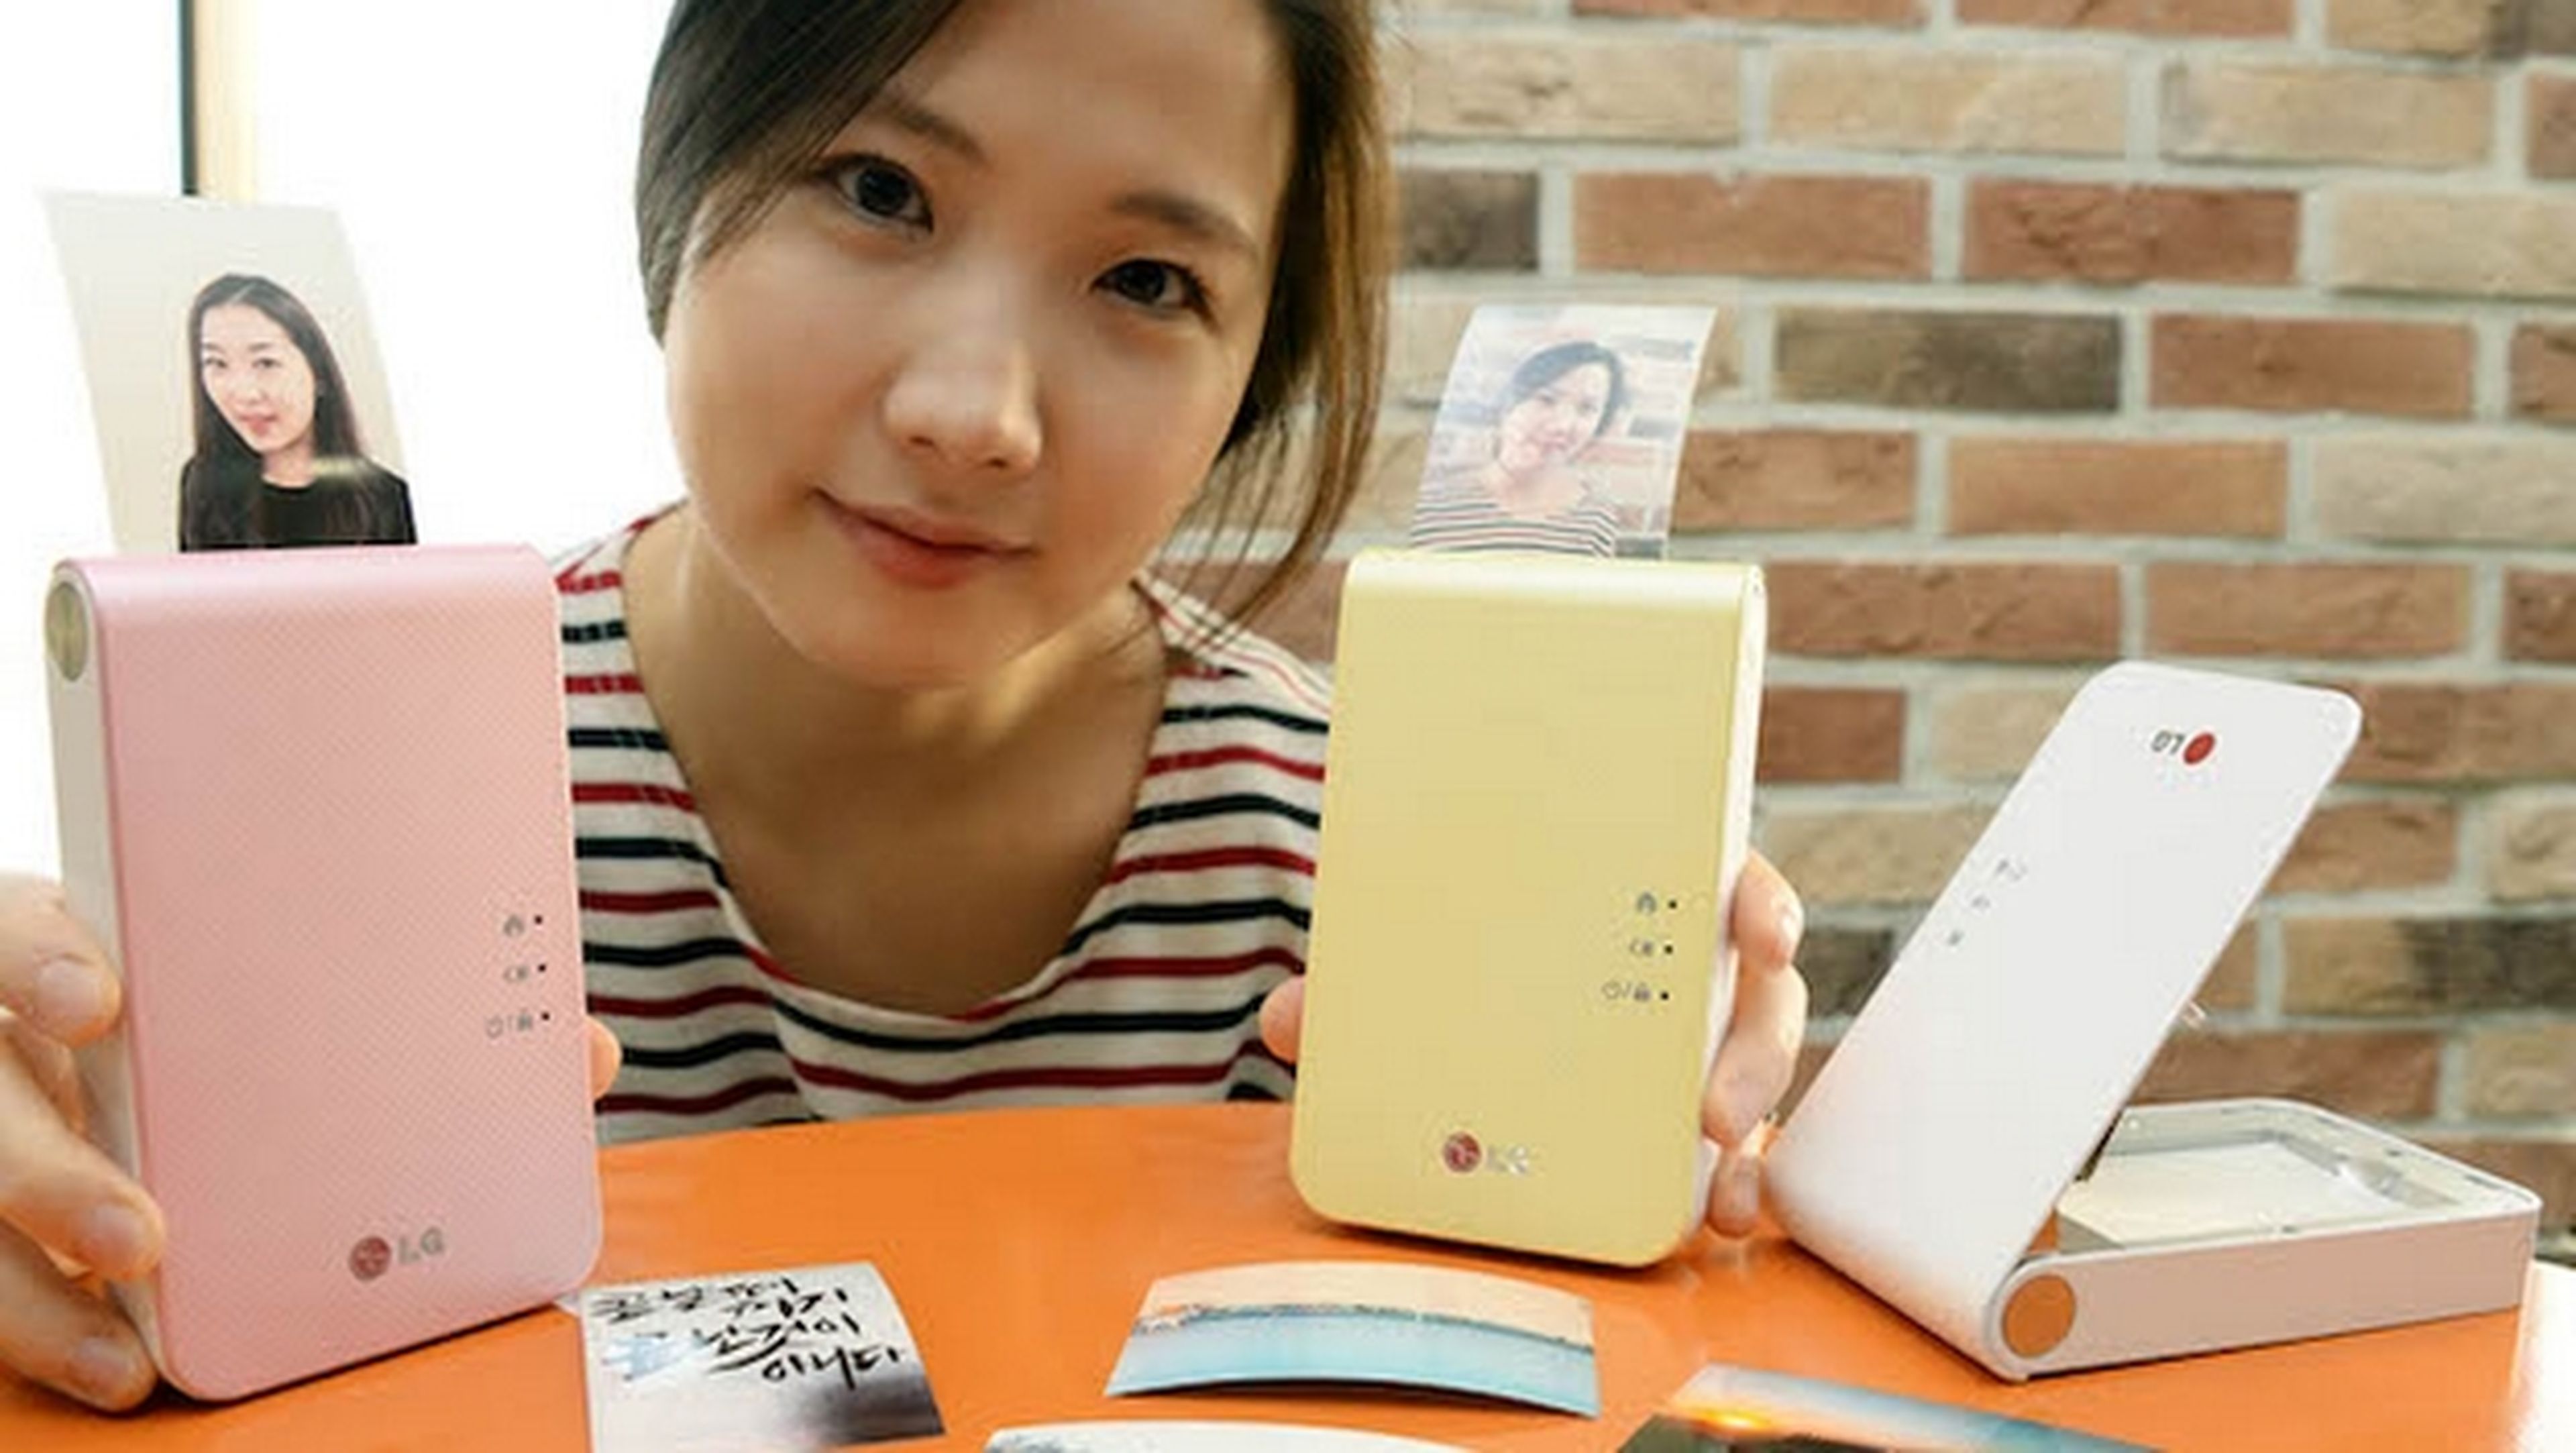 LG Pocket Photo Printer 2.0, la impresora de bolsillo para imprimir las fotos del móvil al instante.